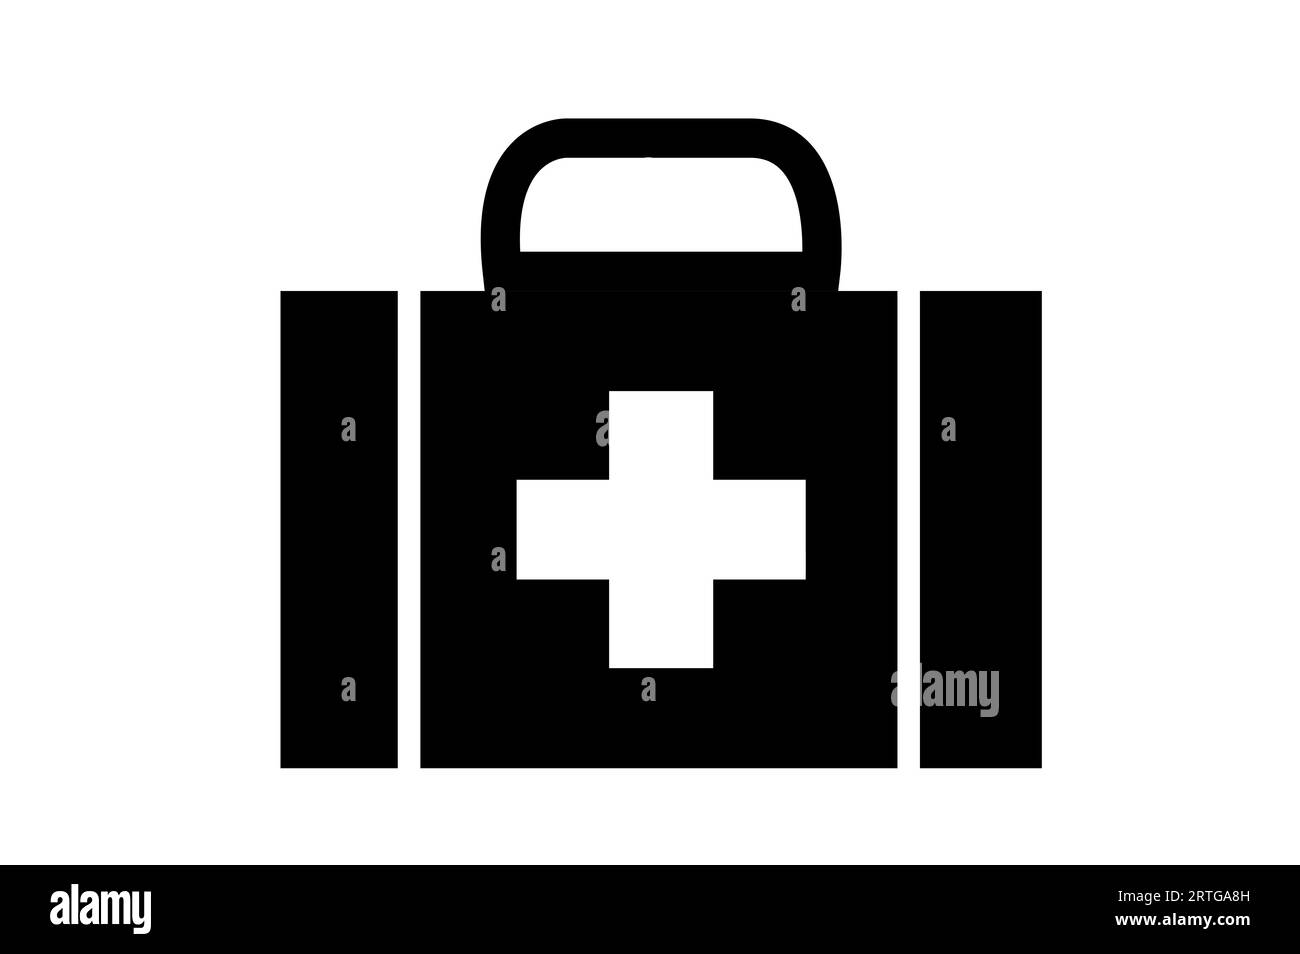 Nurse bag icon on white background, isolated. Stock Photo